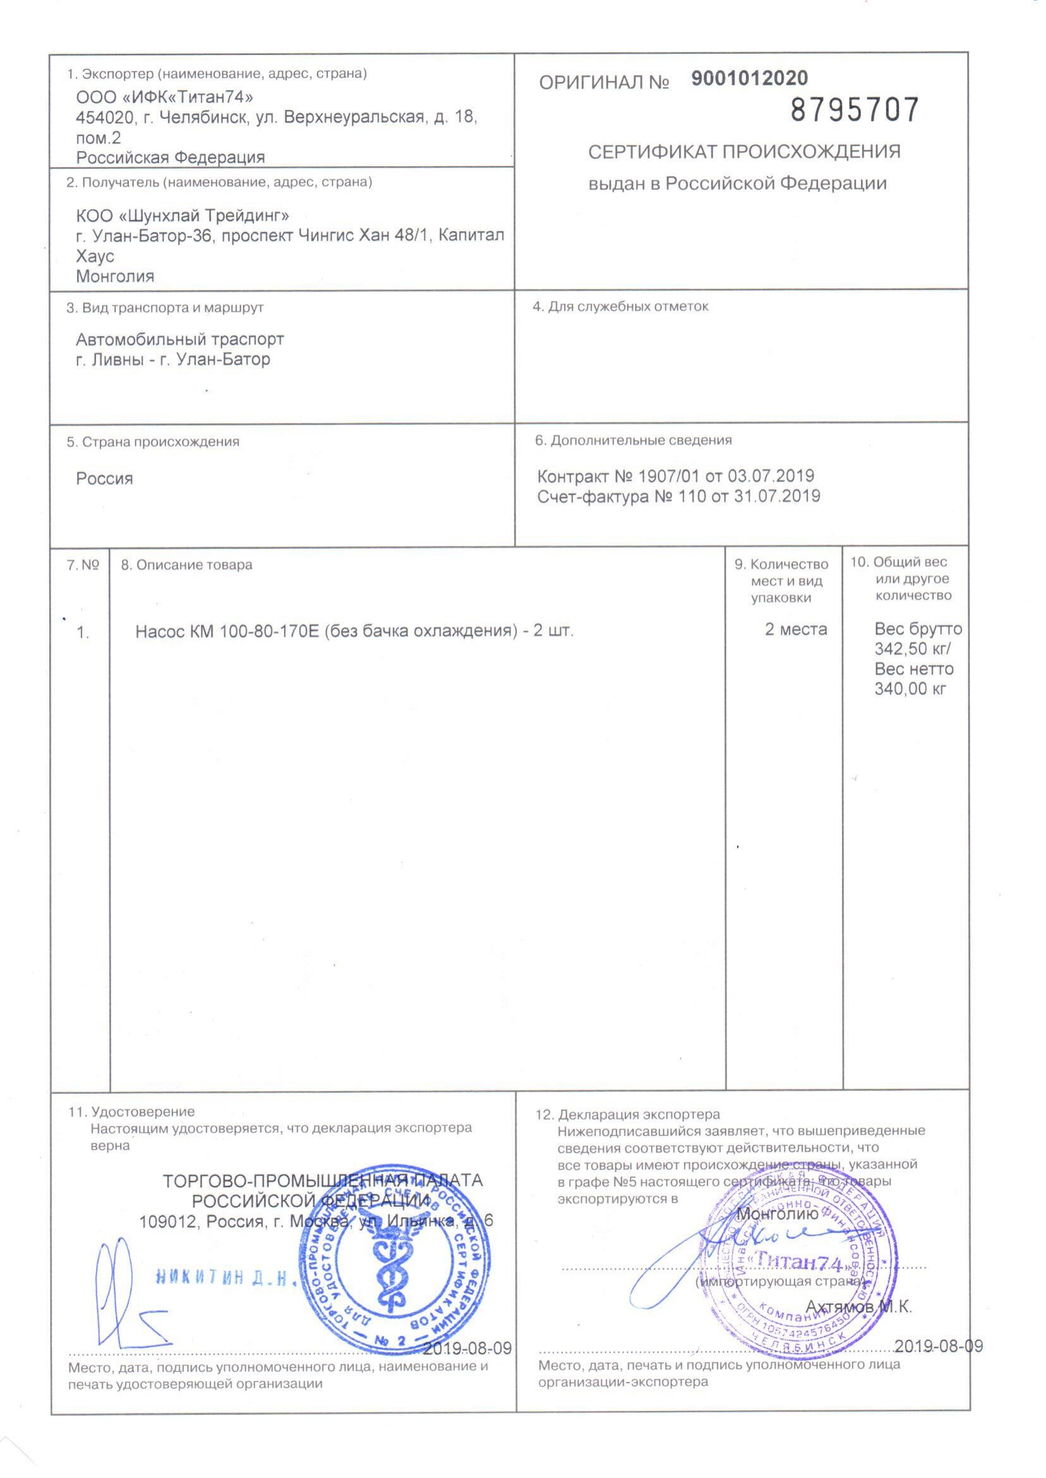 При вывозе товаров с таможенной территории еаэс сертификат о происхождении товара выдается